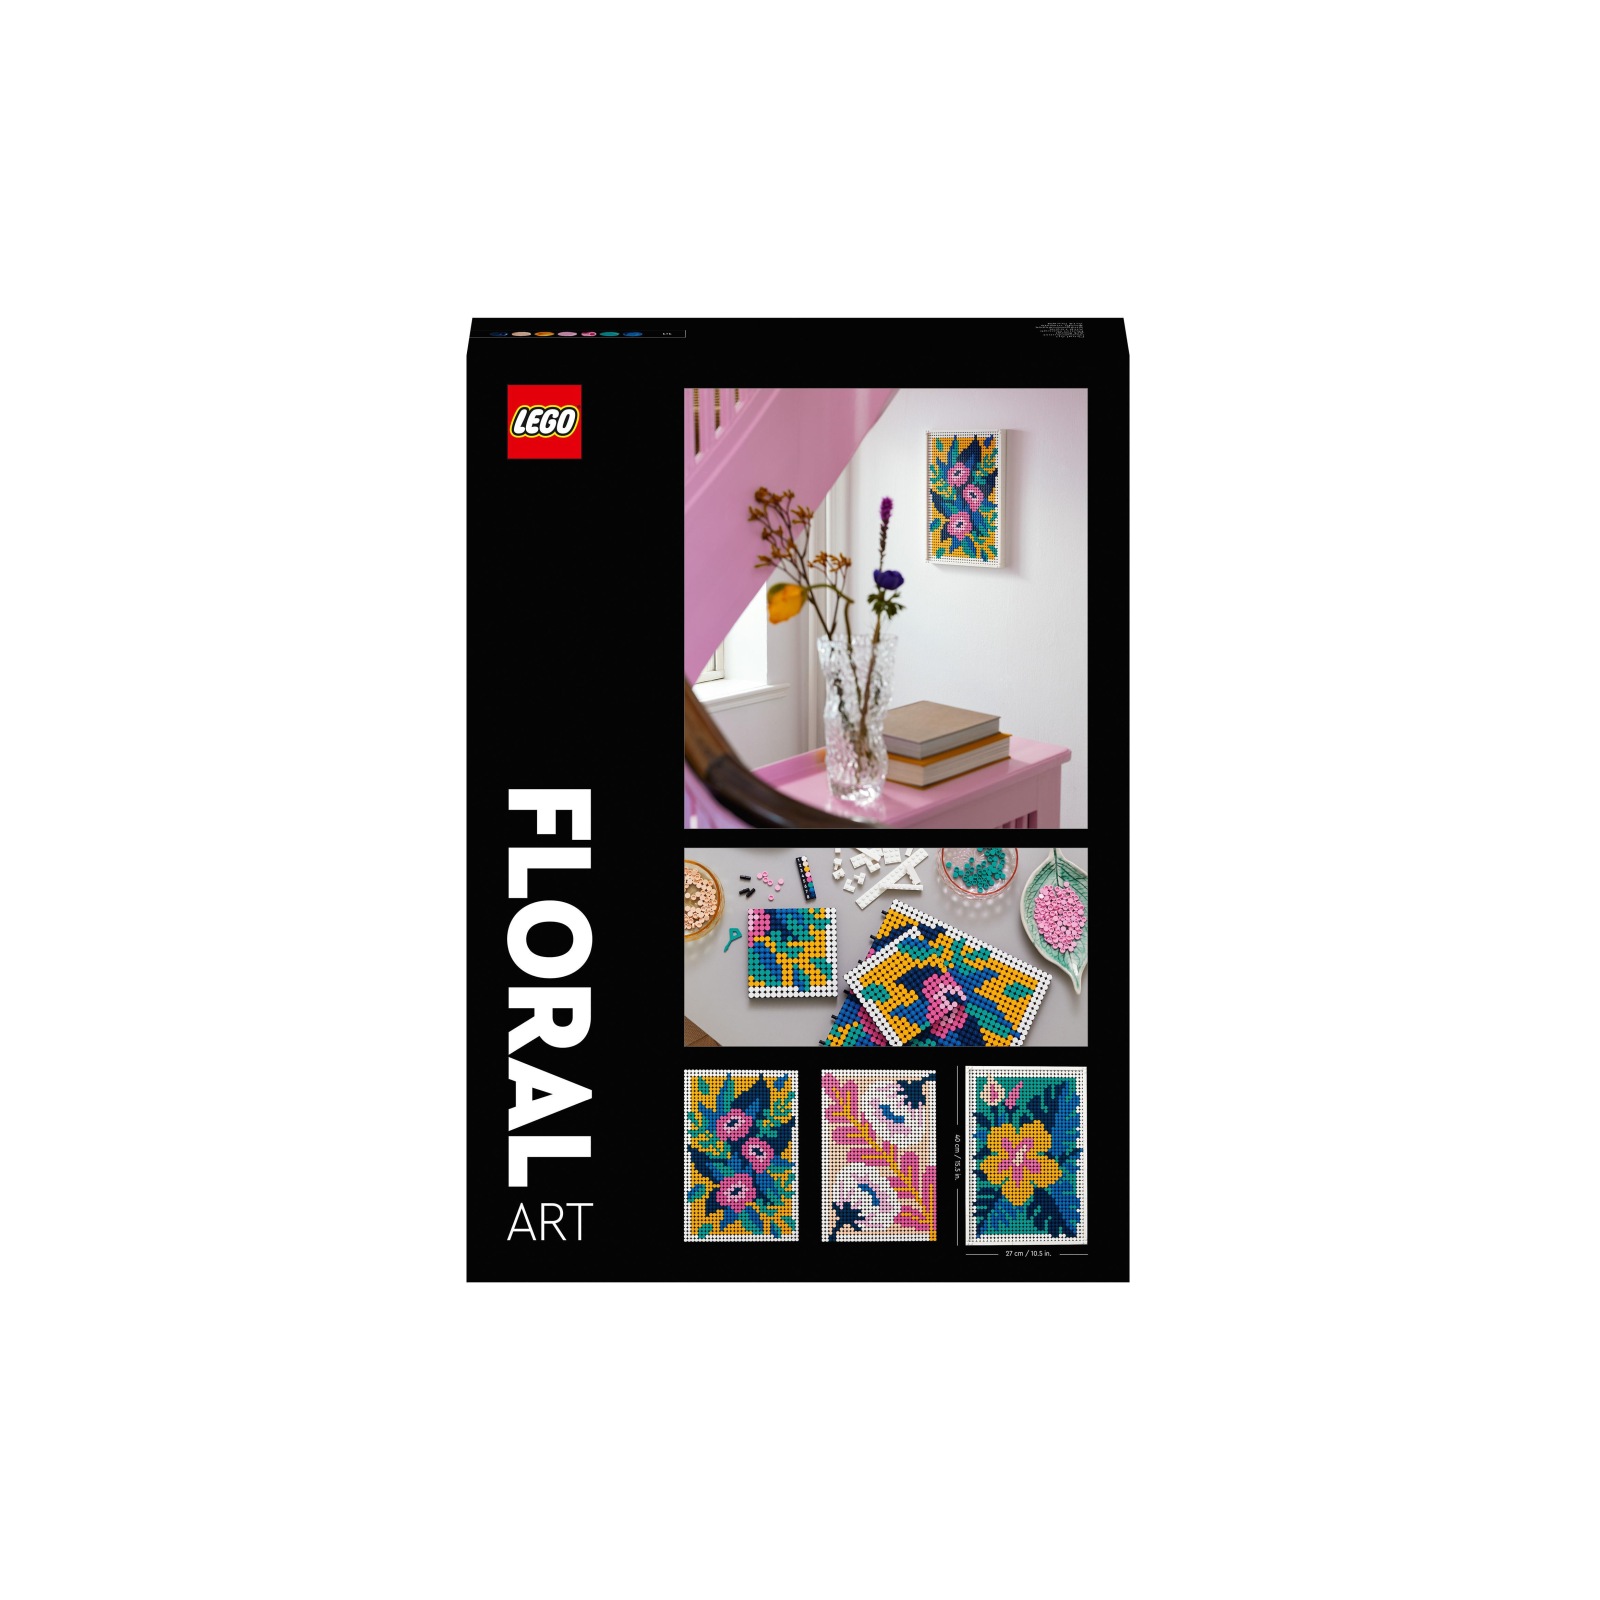 Lego art 31207 motivi floreali, set decorazioni murali 3 in 1, attività di artigianato fai da te, hobby creativo di botanica - LEGO Art